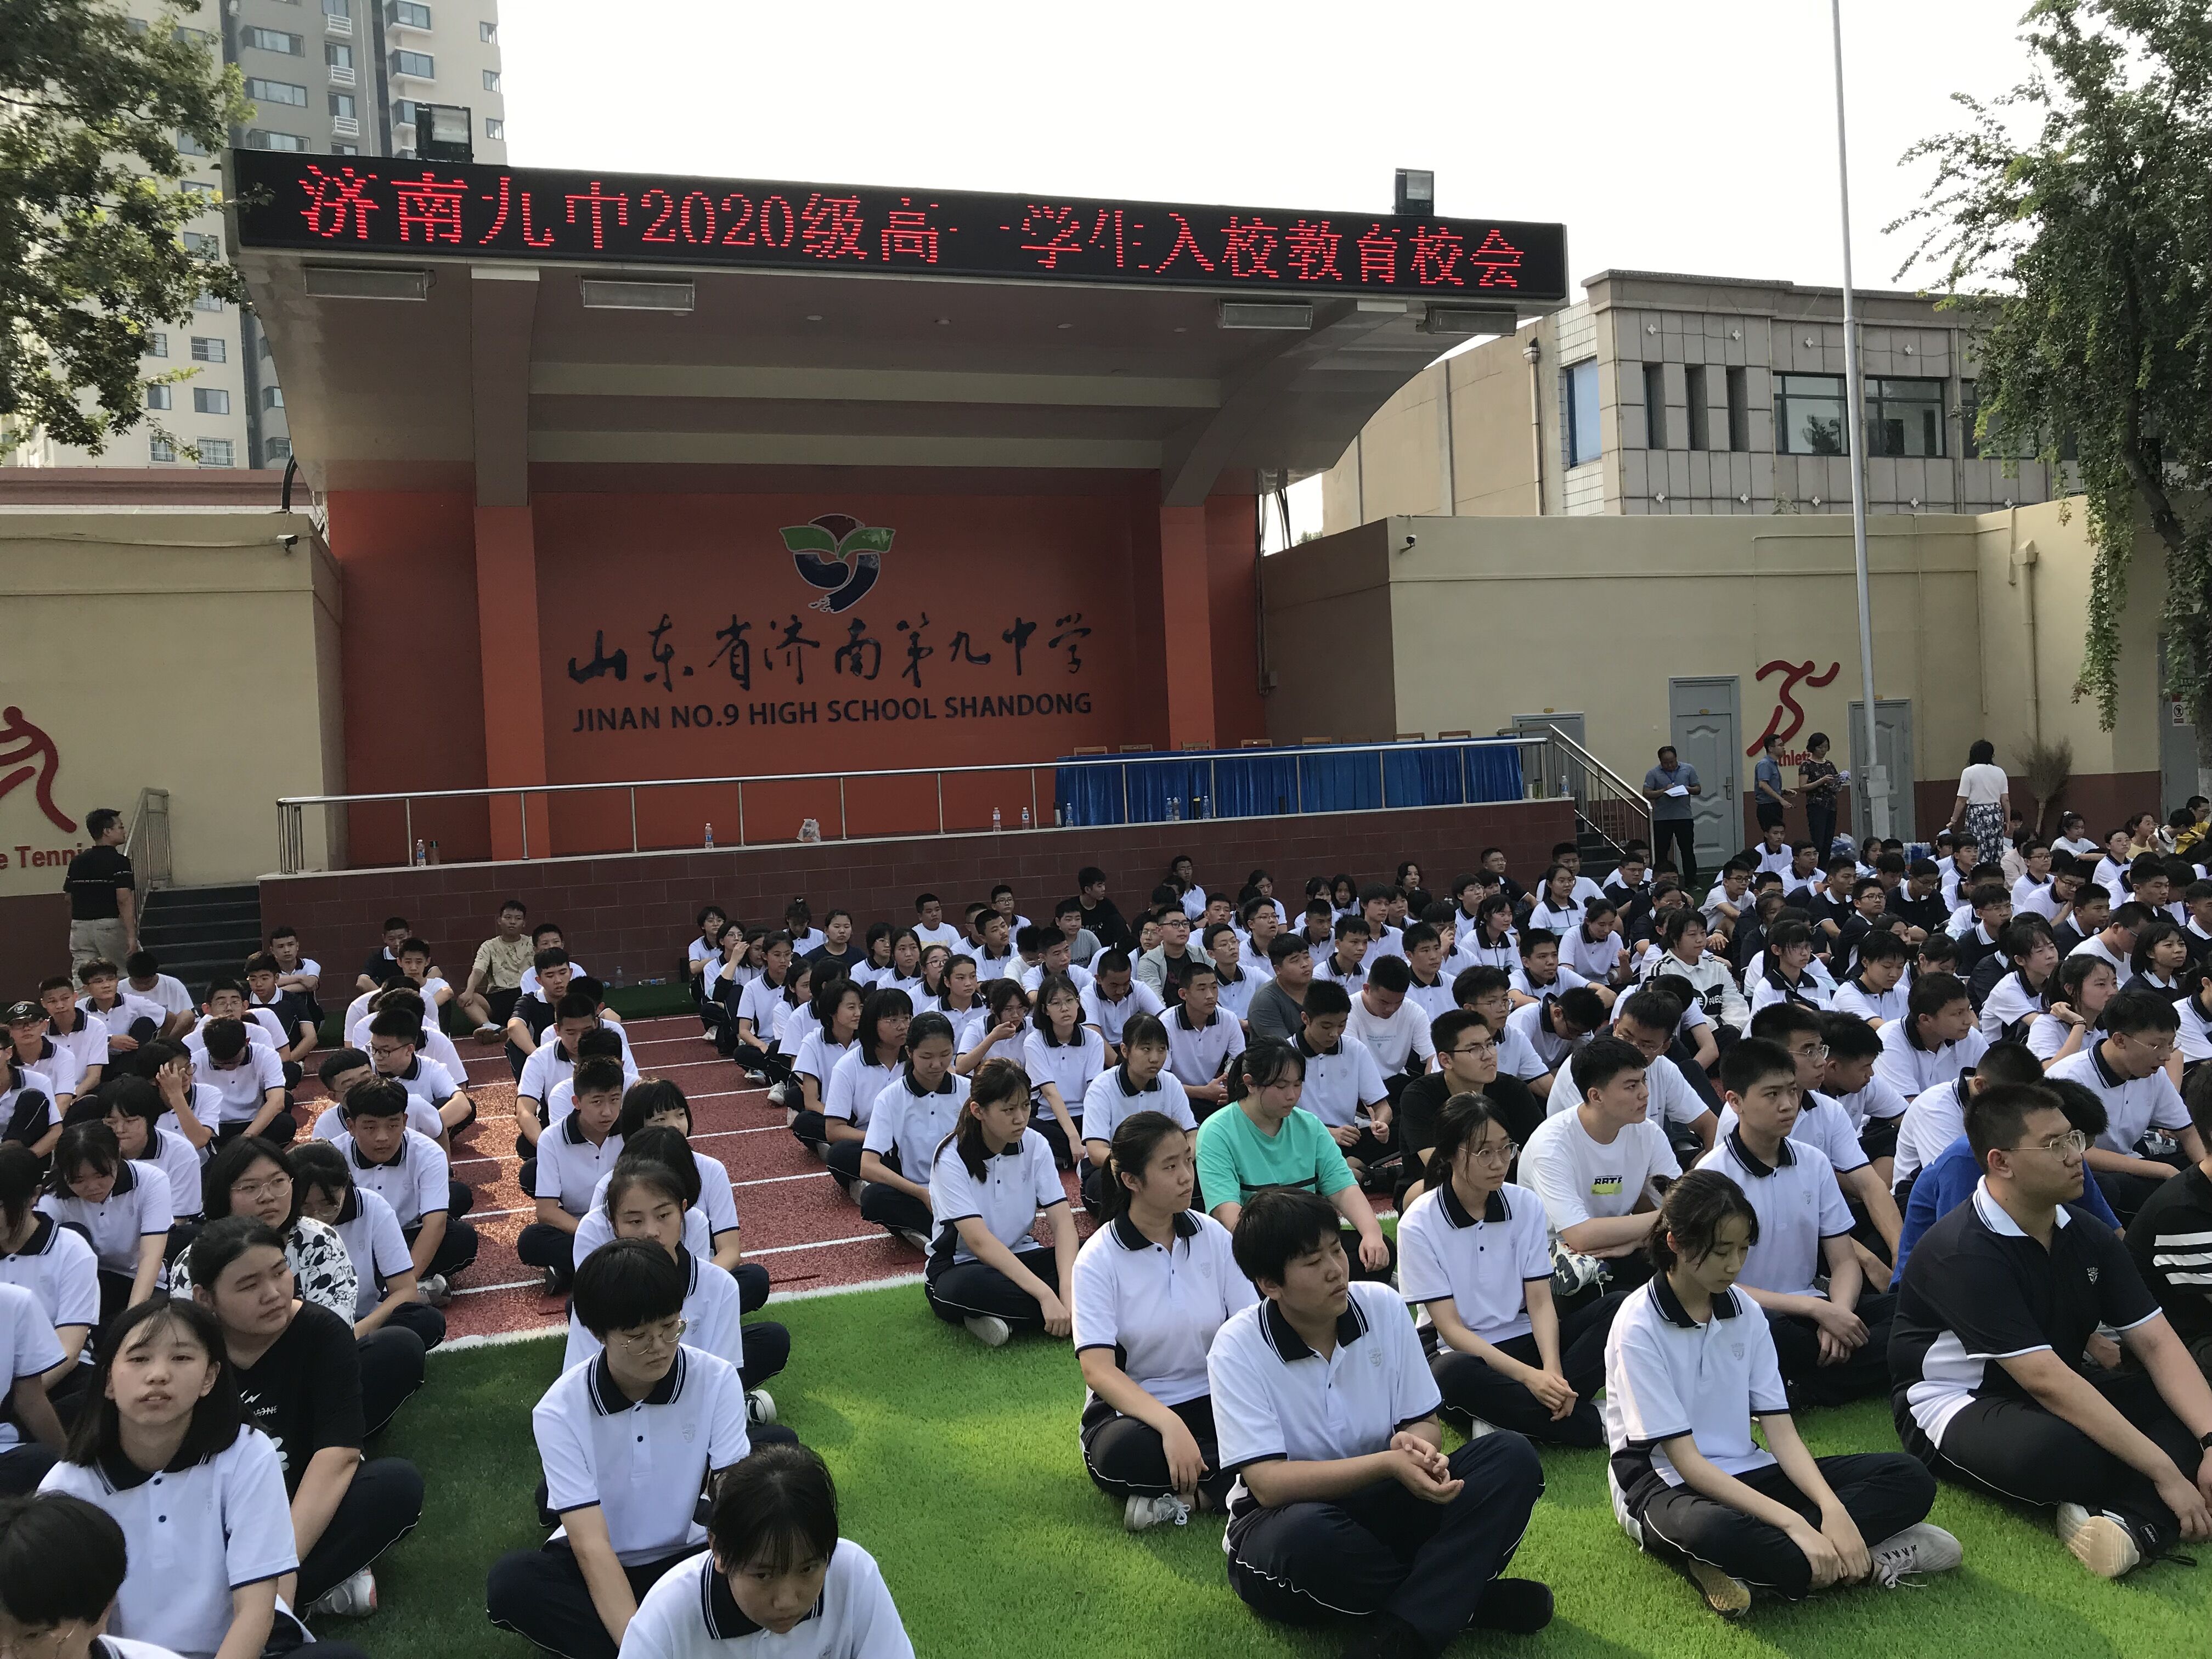 山东省济南第九中学 校园动态 济南九中多措并举保障2020级新生顺利